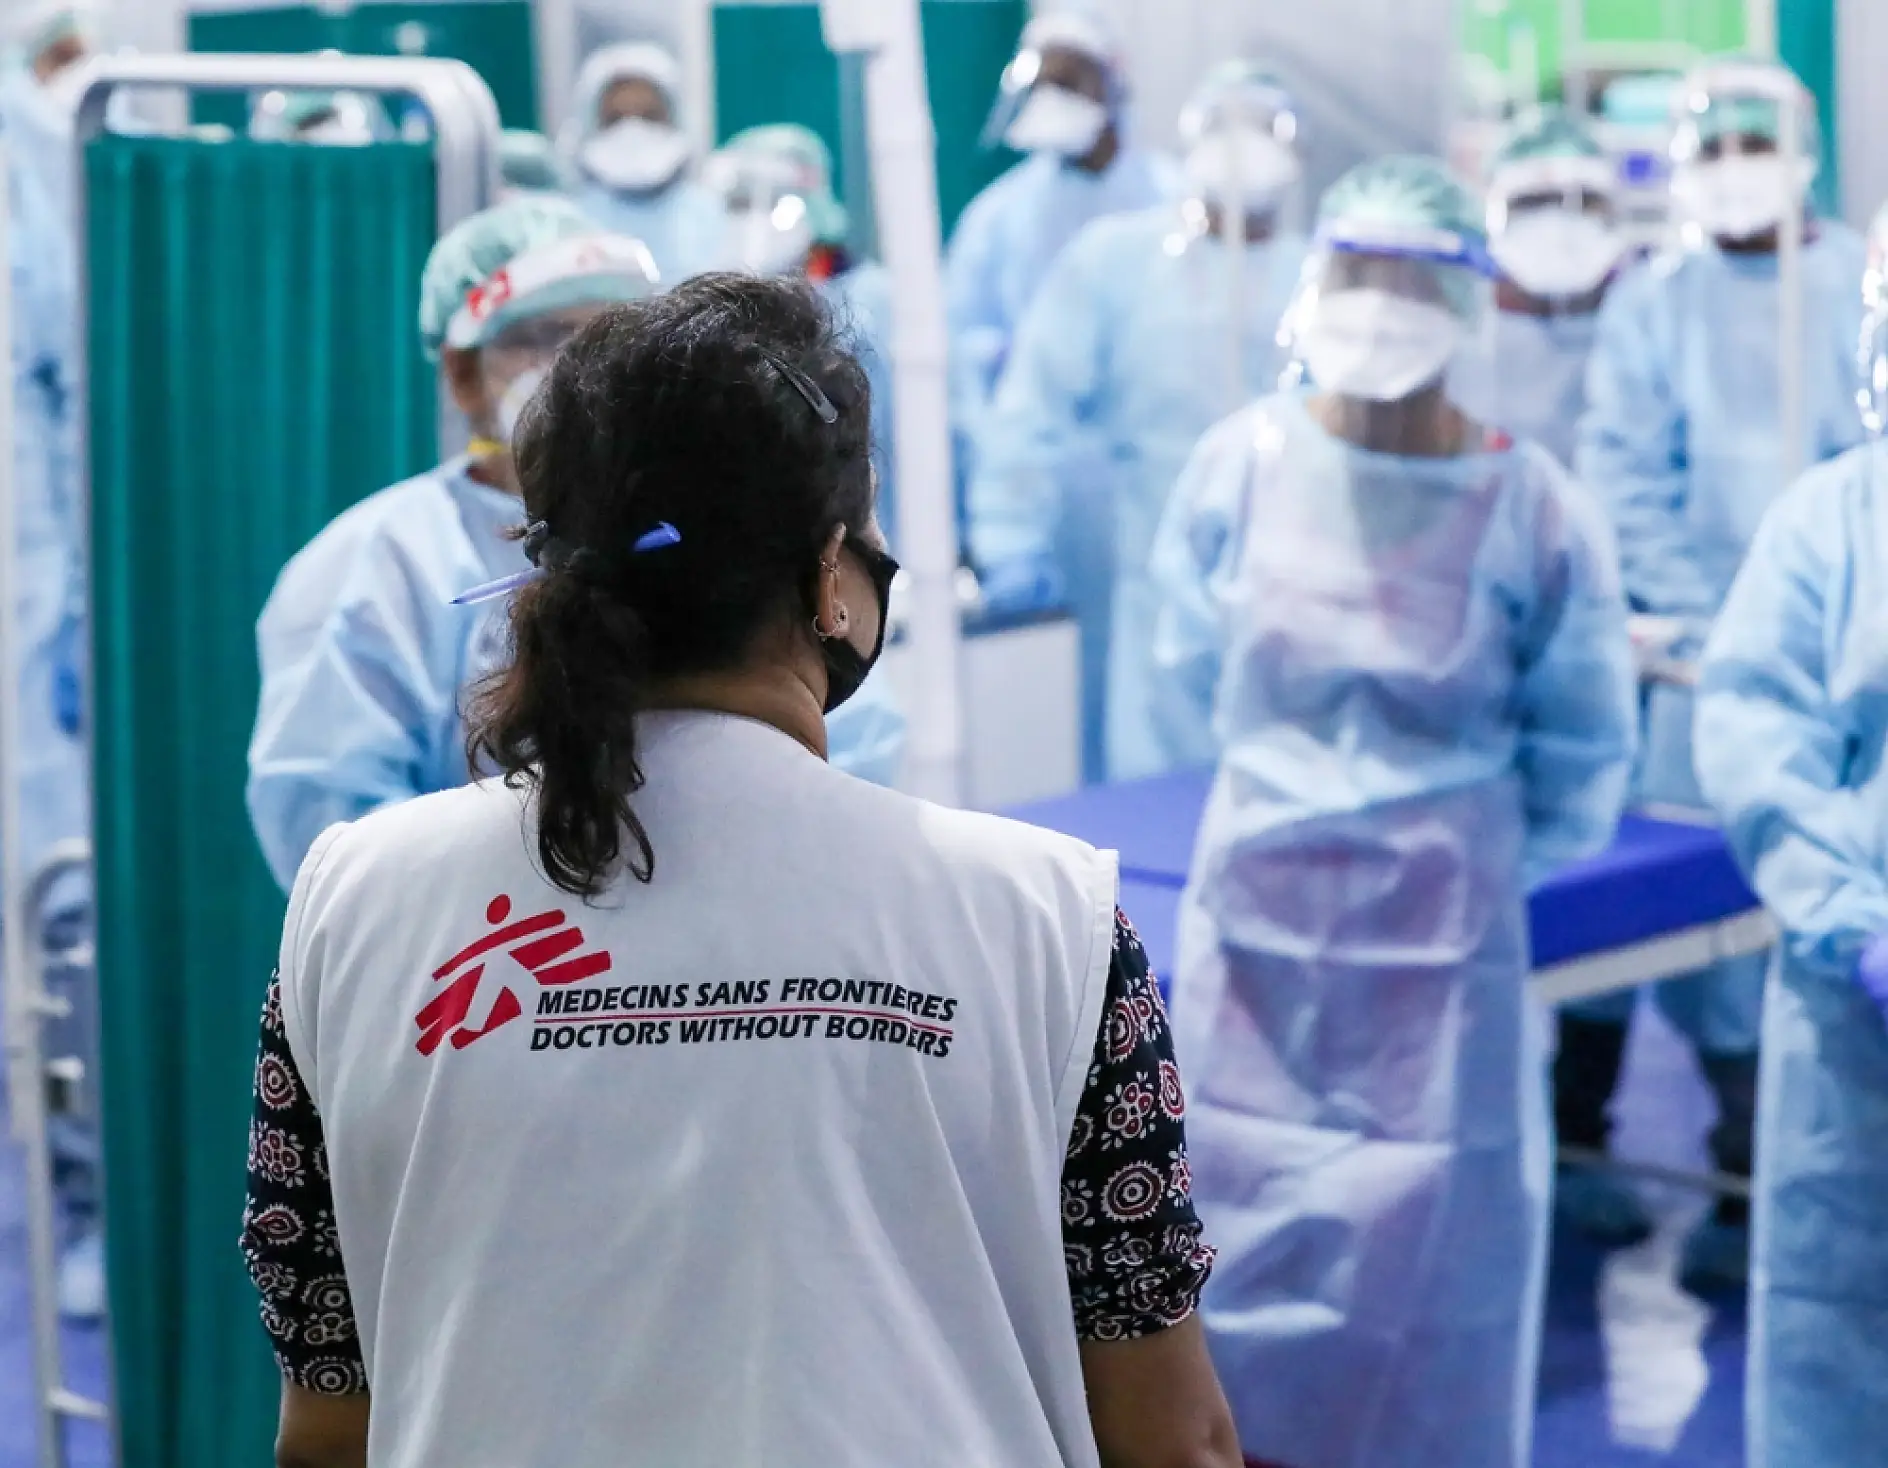 En av huvudprioriteringarna för MSF är säkerheten för deras hälsoarbetare och därför måste all personal följa strikta protokoll när det gäller trygghet och säkerhet